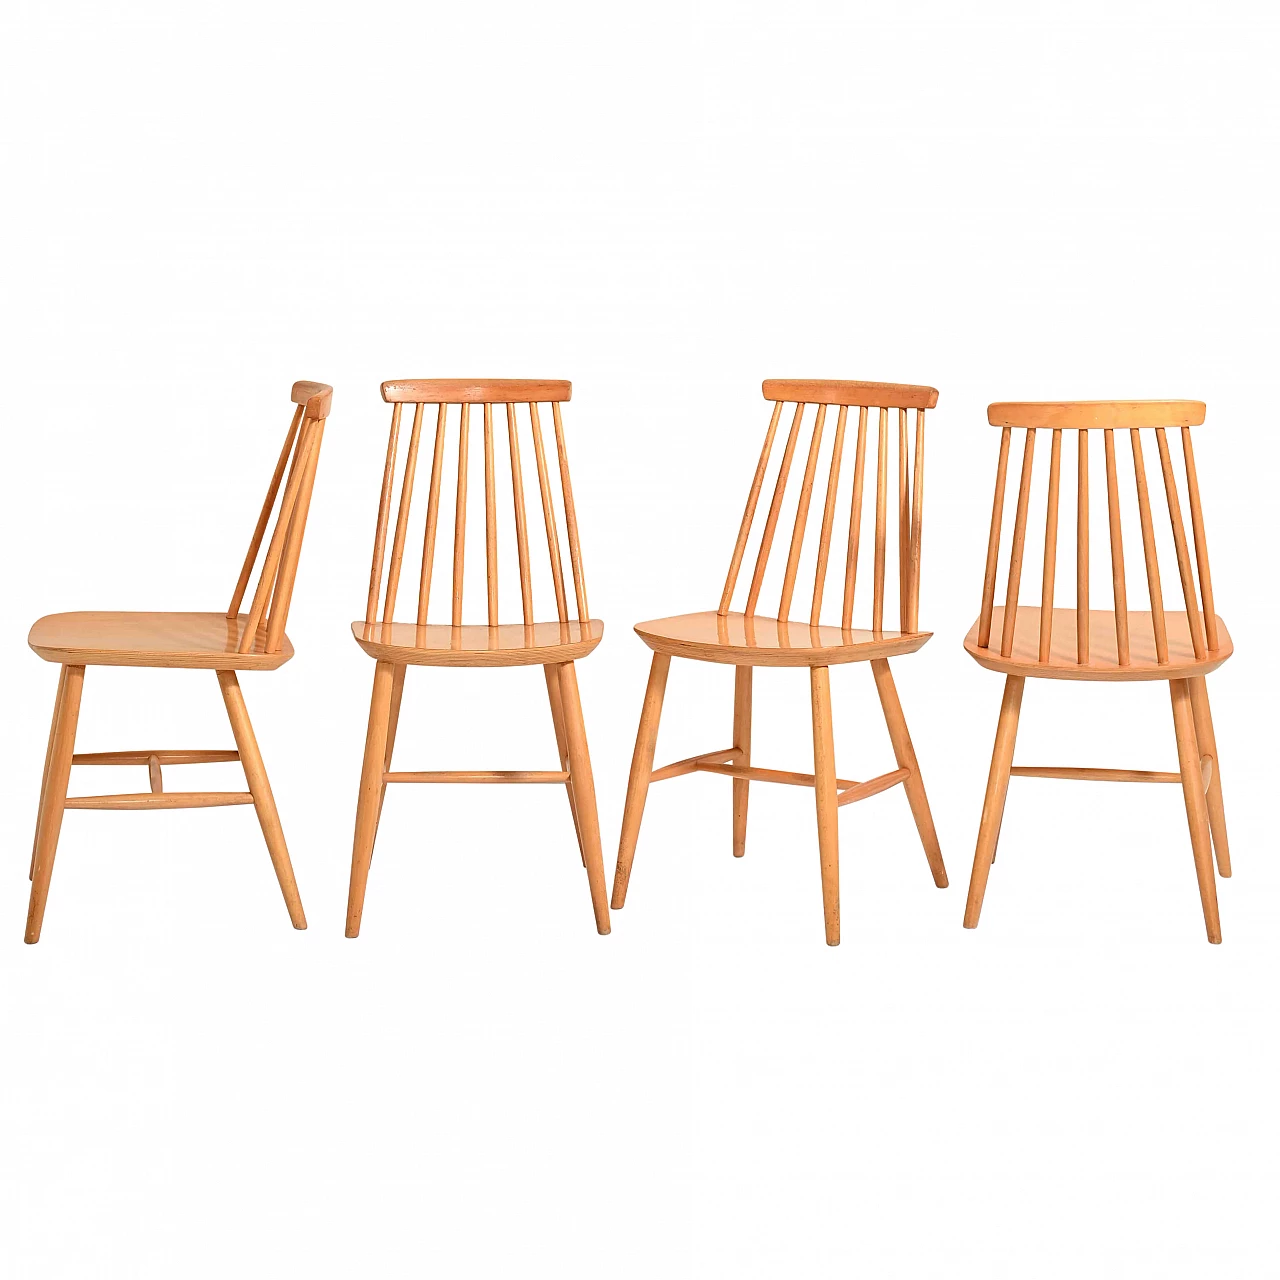 4 Pinstolar chairs in birch wood, 60s 1237335